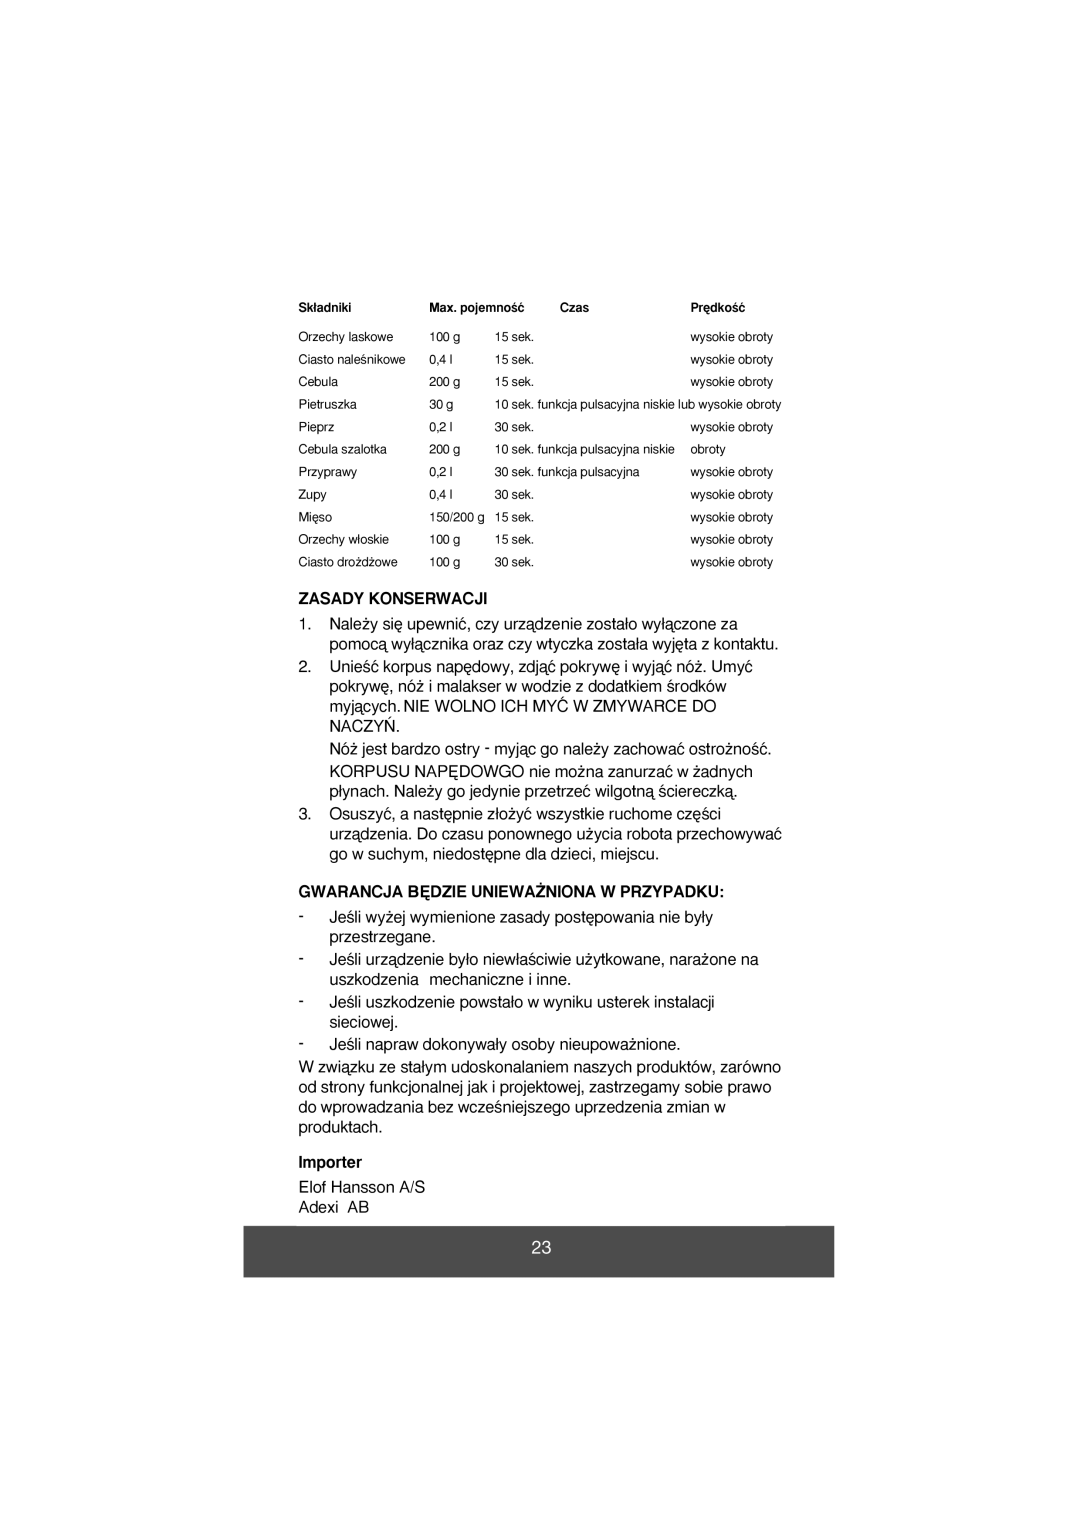 Melissa 646-028 manual Zasady Konserwacji, Gwarancja B¢Dzie Uniewa˚Niona W Przypadku, Importer 